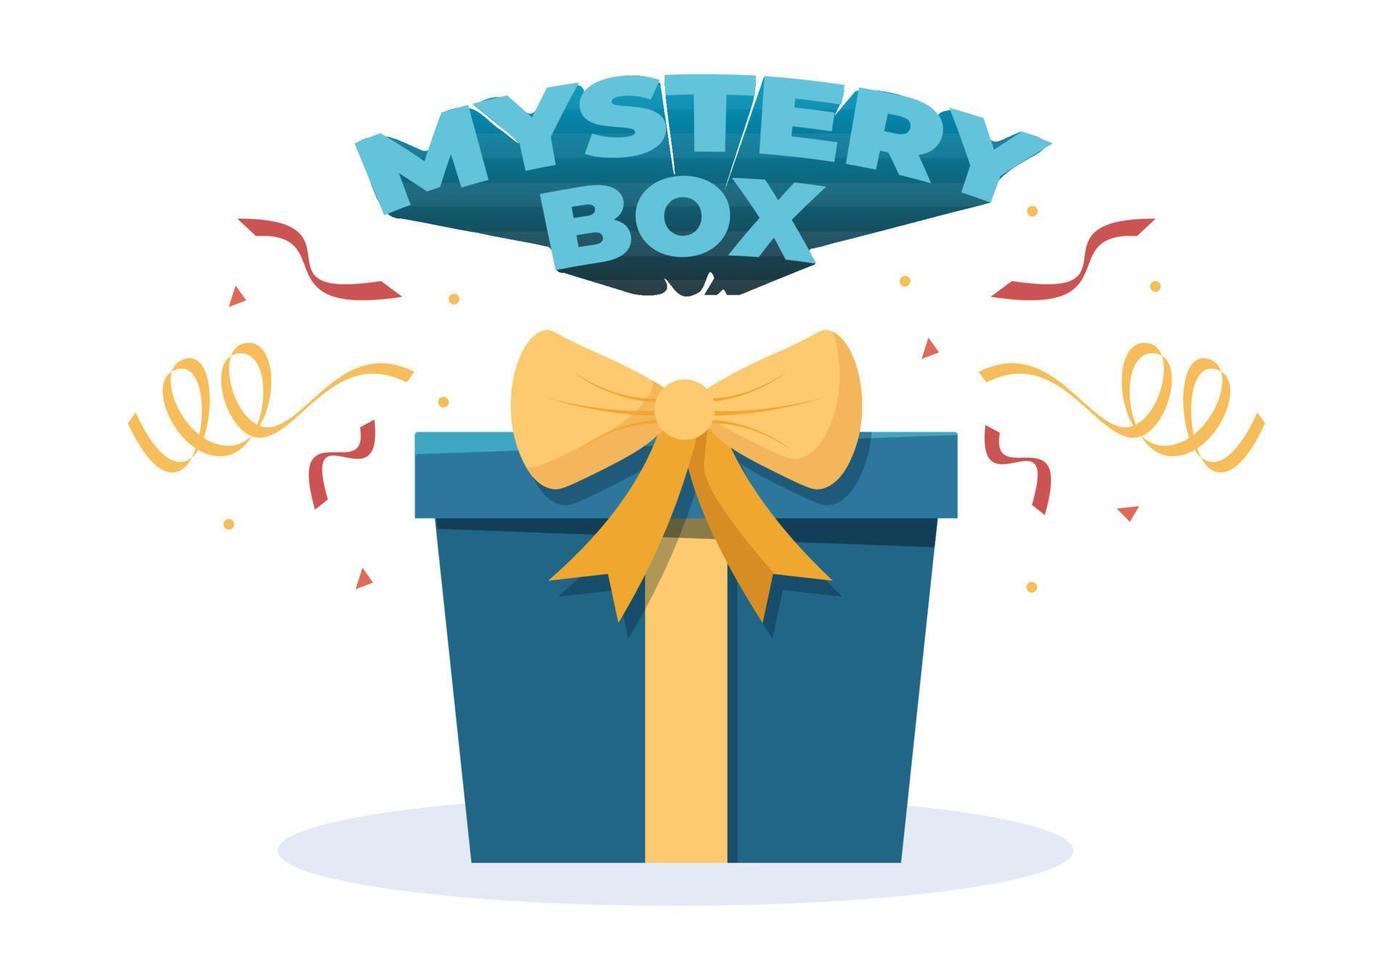 coffret cadeau mystère avec boîte en carton ouverte à l'intérieur avec un point d'interrogation, un cadeau porte-bonheur ou une autre surprise en illustration de style dessin animé plat vecteur